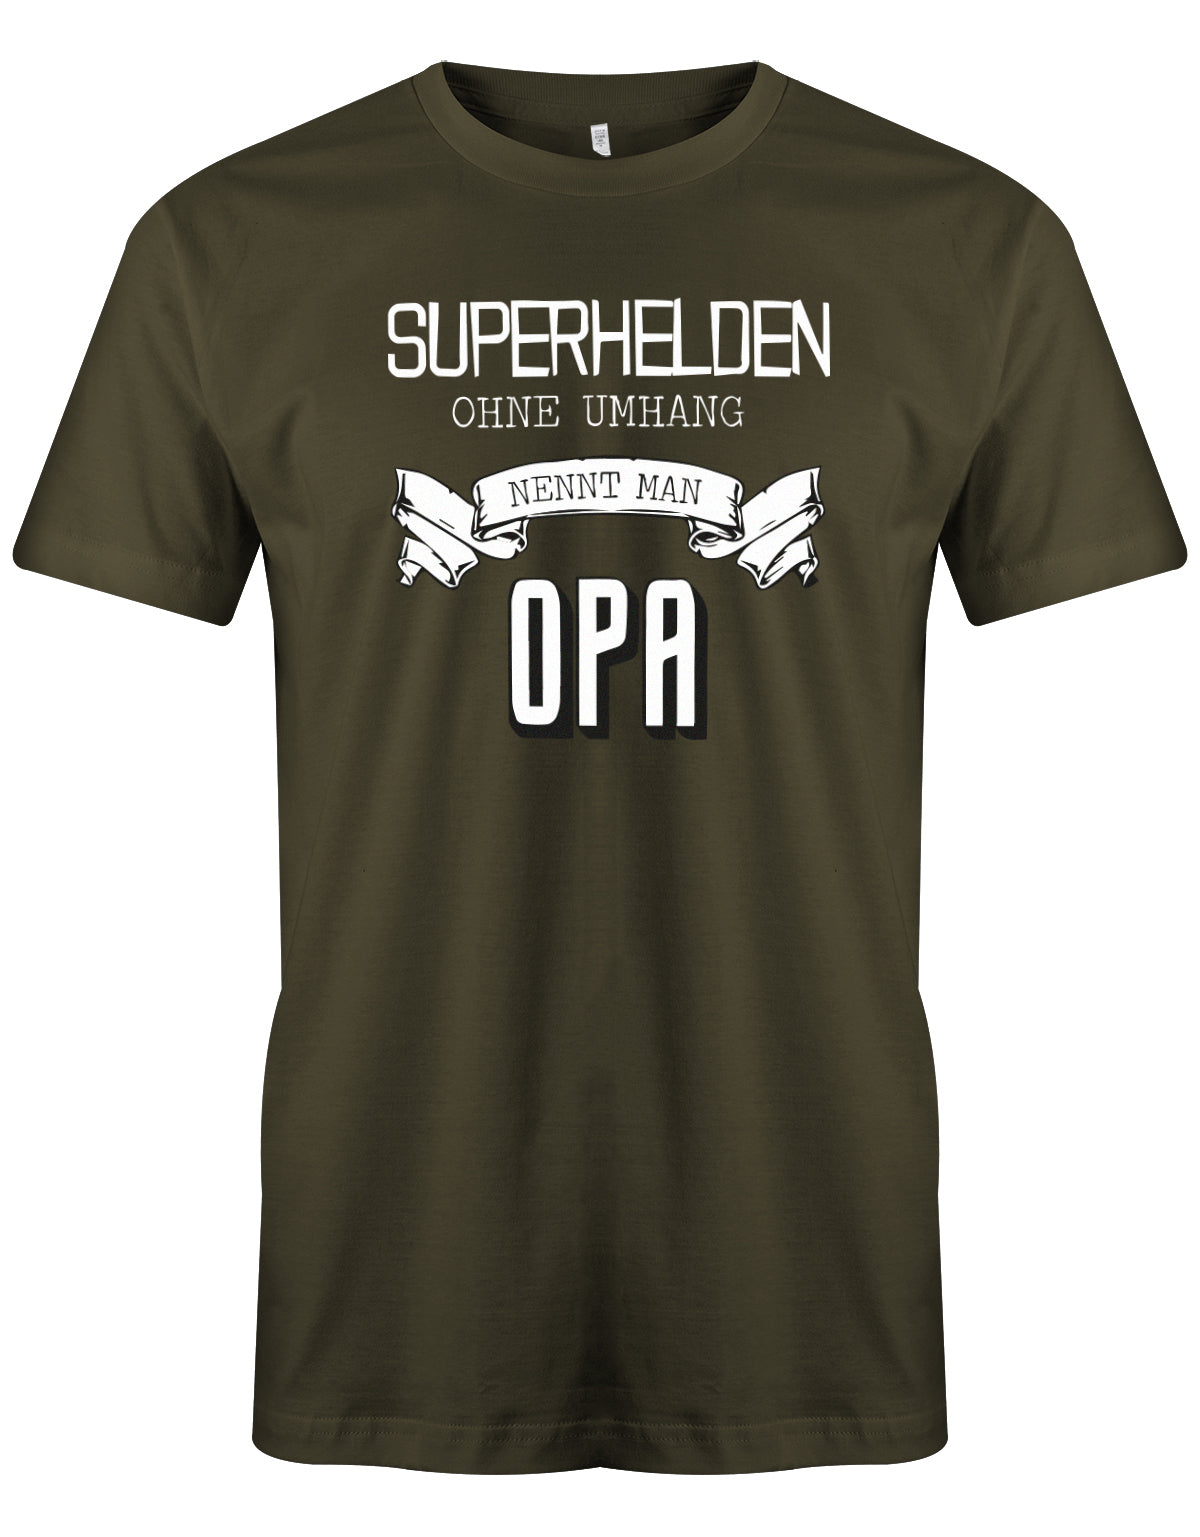 Opa T-Shirt – Superhelden ohne Umhang nennt man Opa Army